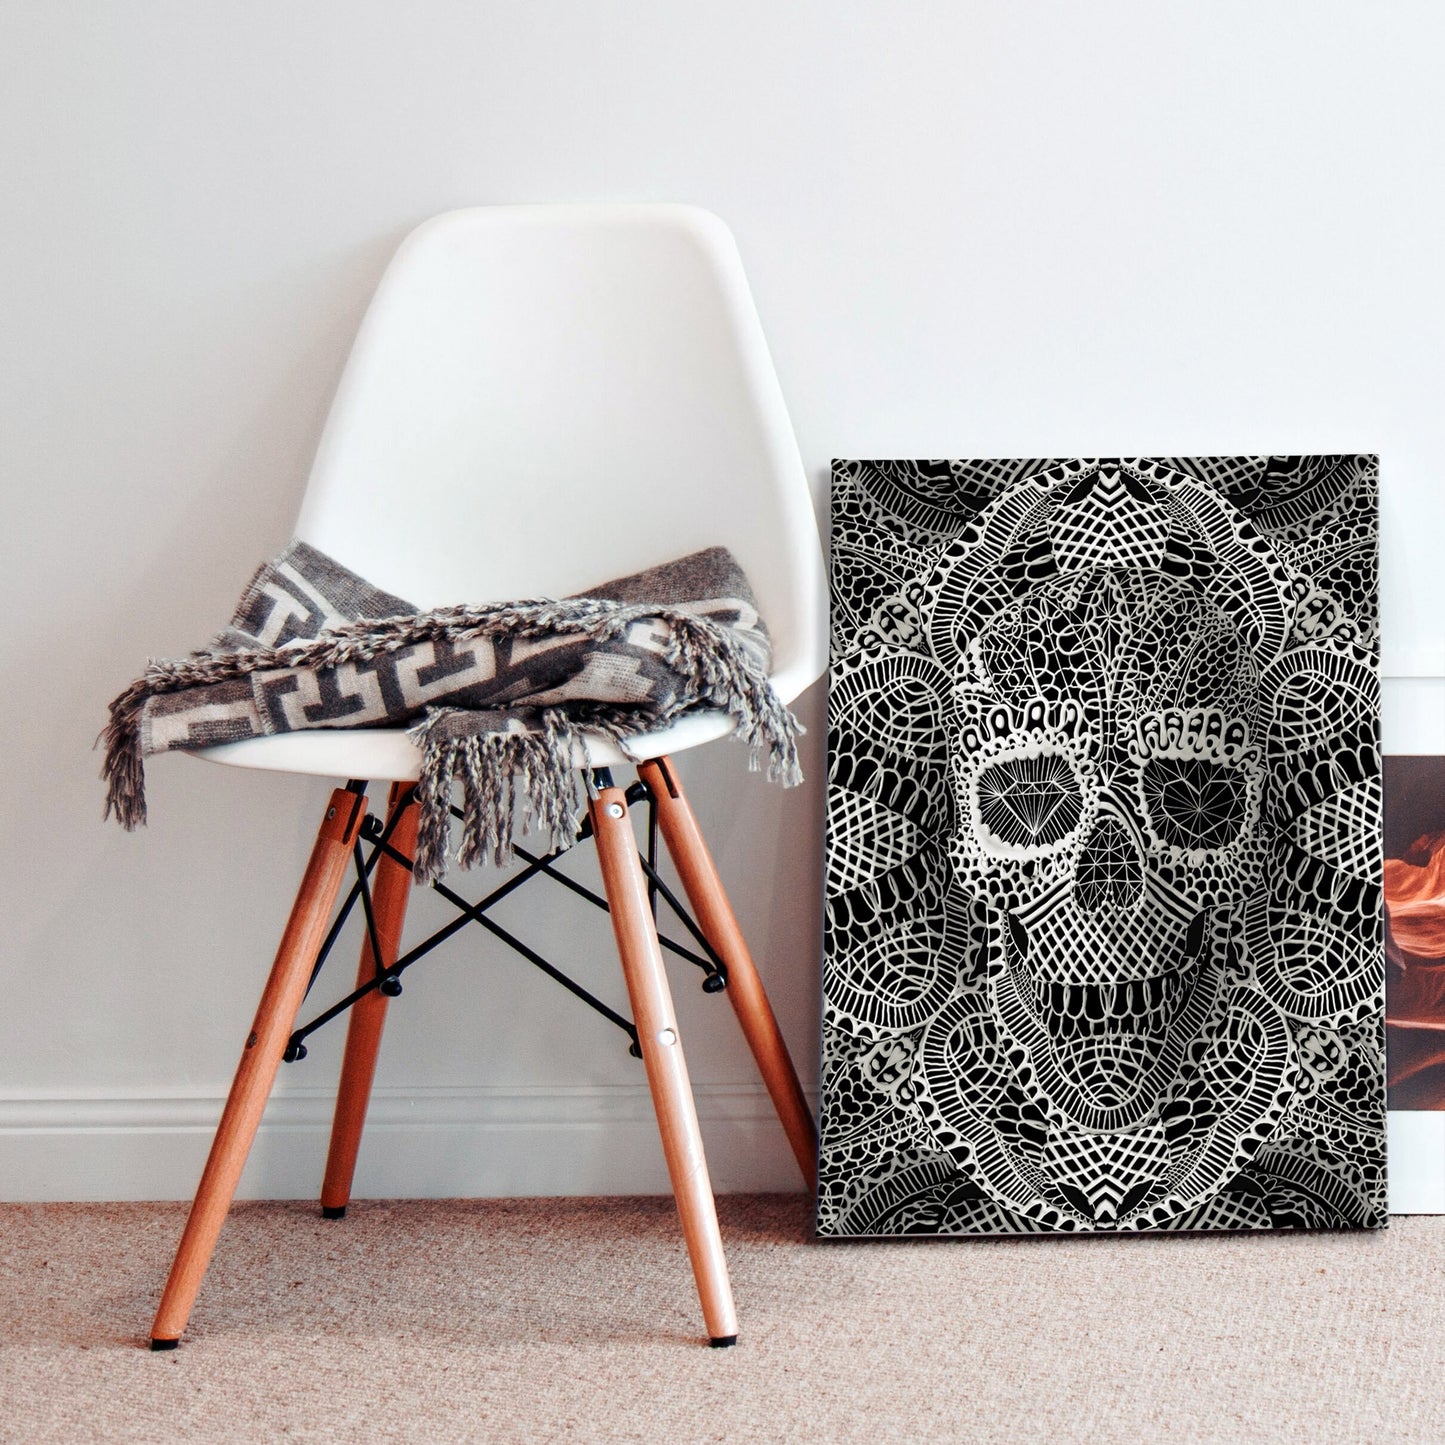 Skull Canvas Art, Gothic Skull Canvas Print, Lace Skull Canvas Art, Skull Art Home Decor Gift, Lace Texture Sugar Skull Canvas Wall Art